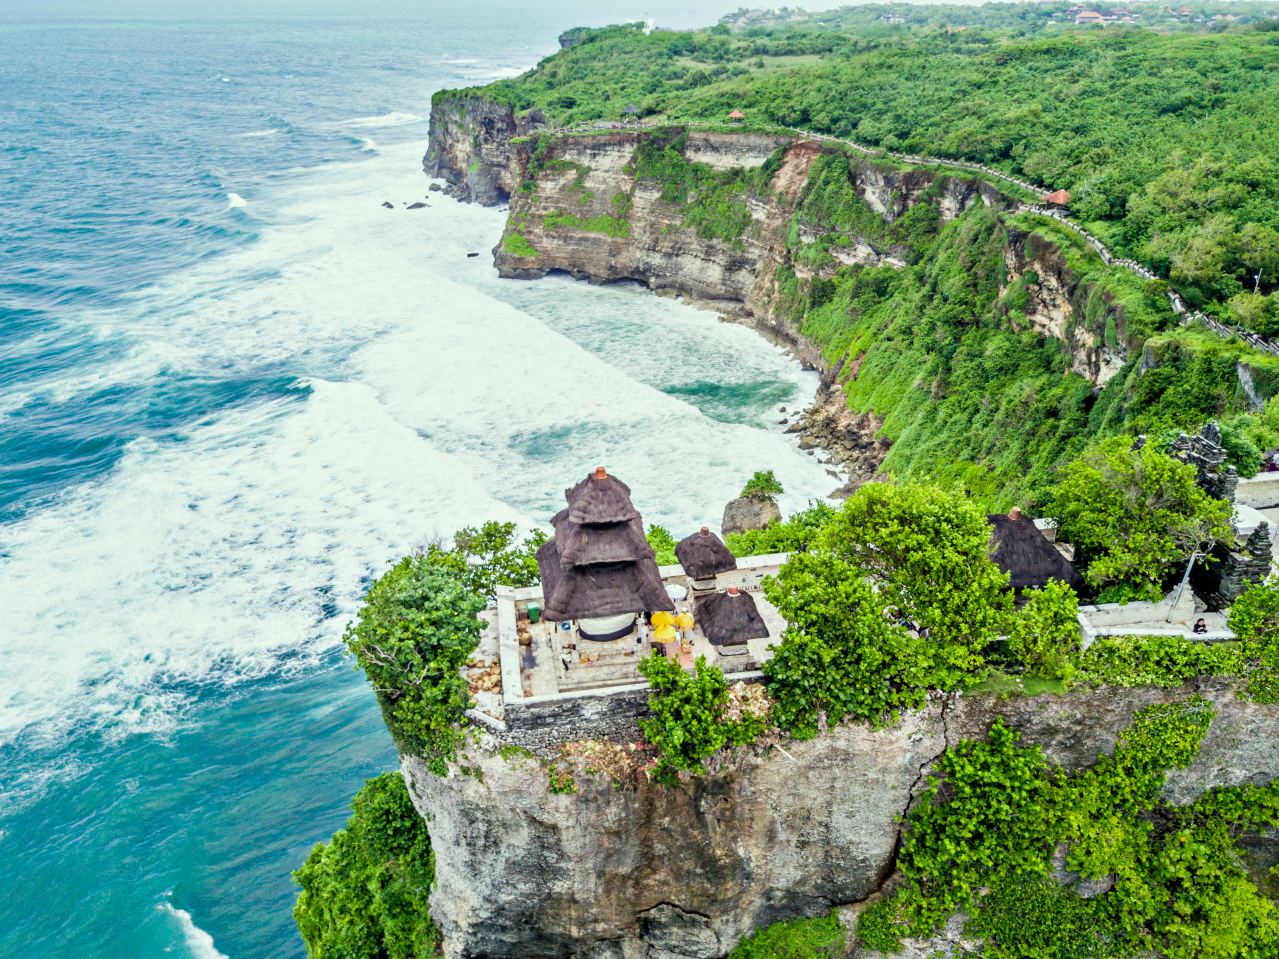 Paket Wisata Bali 2 Hari 1 Malam Murah